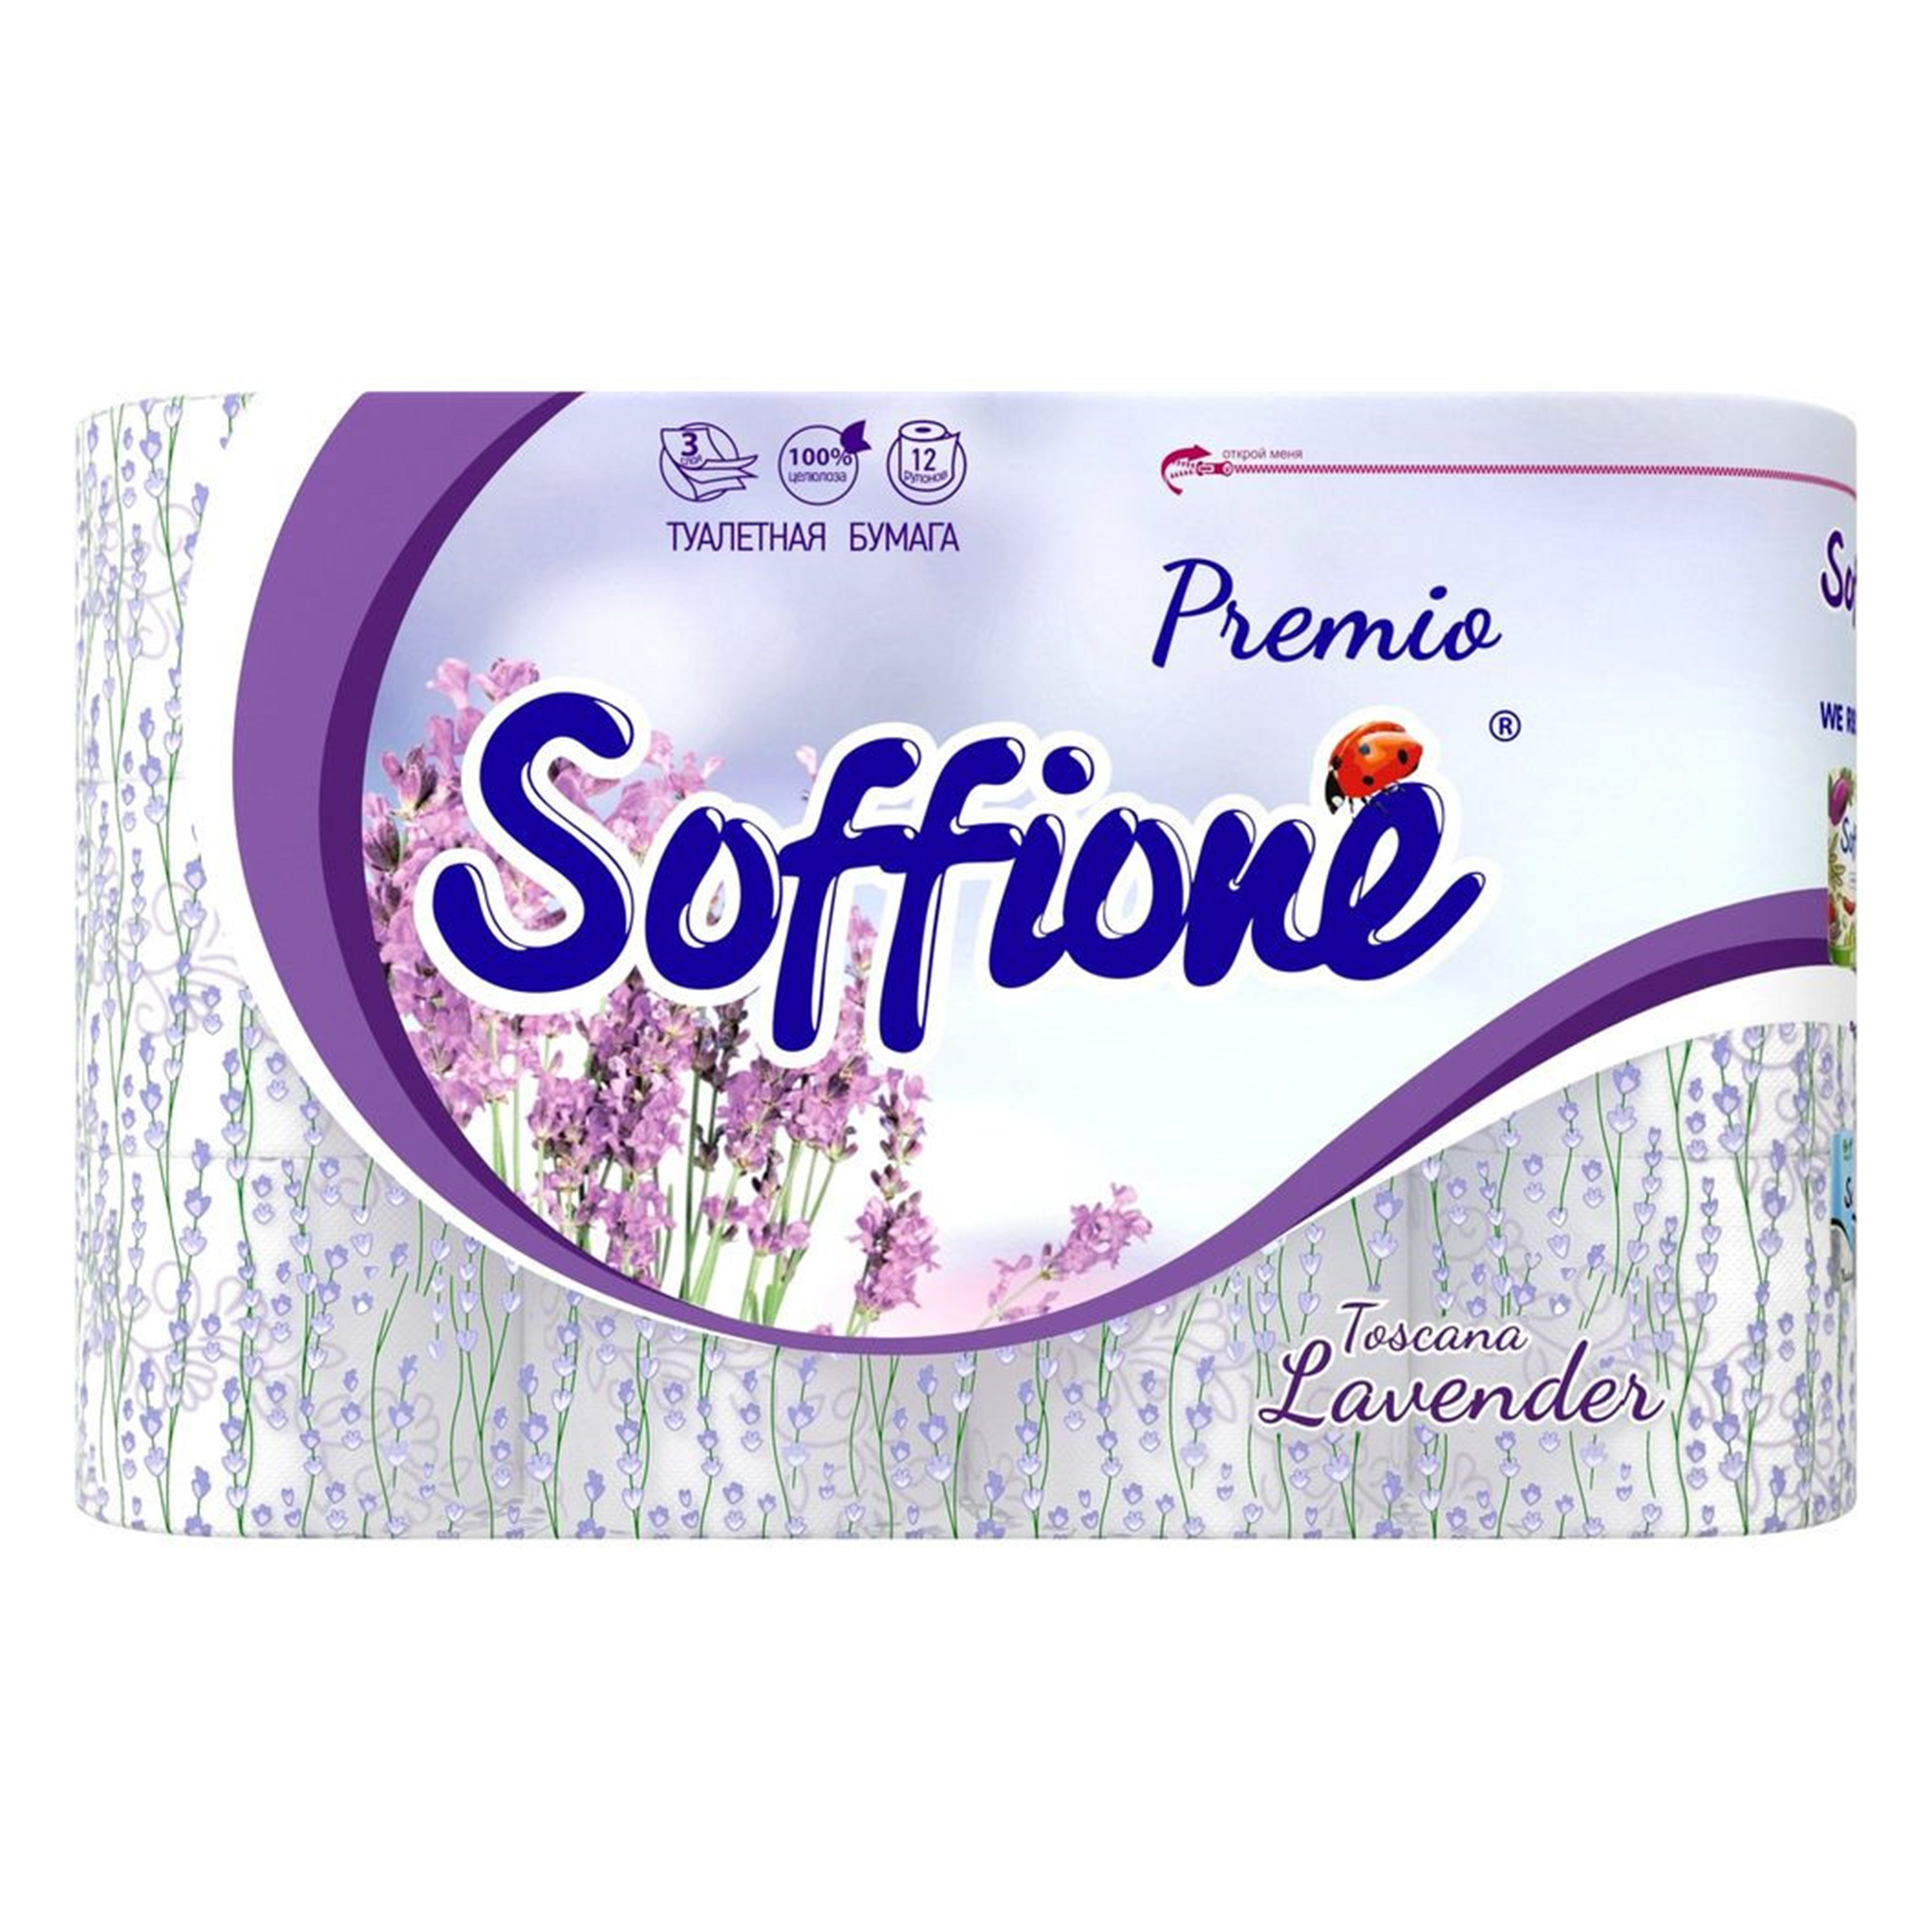 Туалетная бумага Soffione Premio Lavender 3 слоя 12 рулонов туалетная бумага zewa deluxe белая 3х слойная 12шт